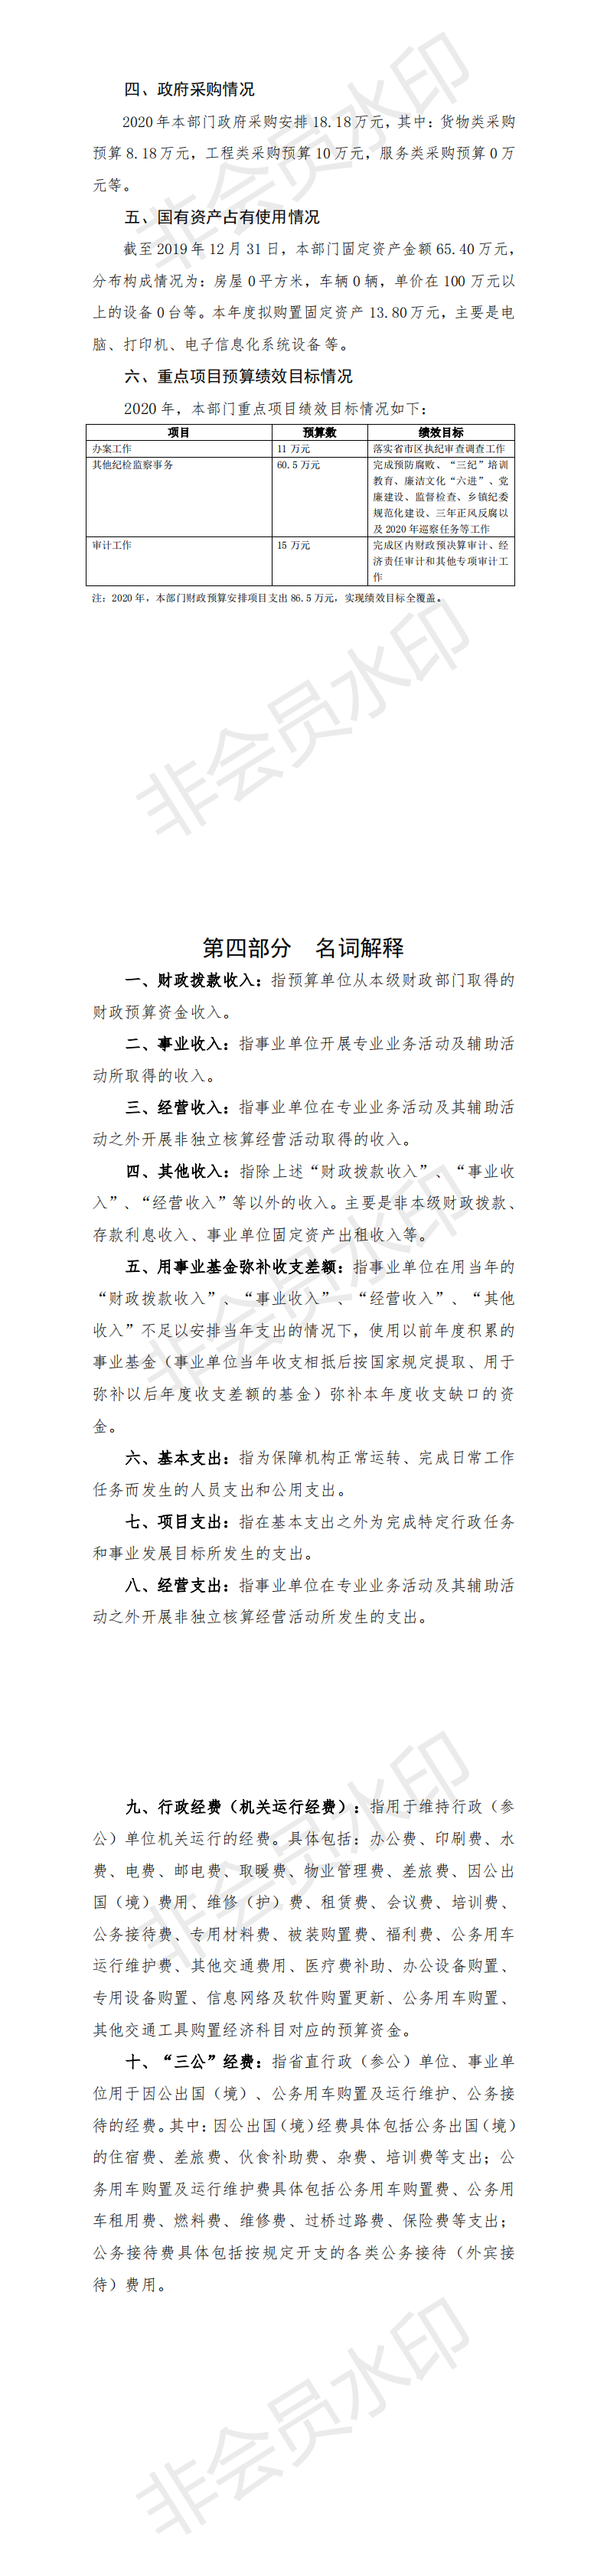 2020年中国共产党阳江高新技术产业开发区纪律检查委员会部门预算_1.png